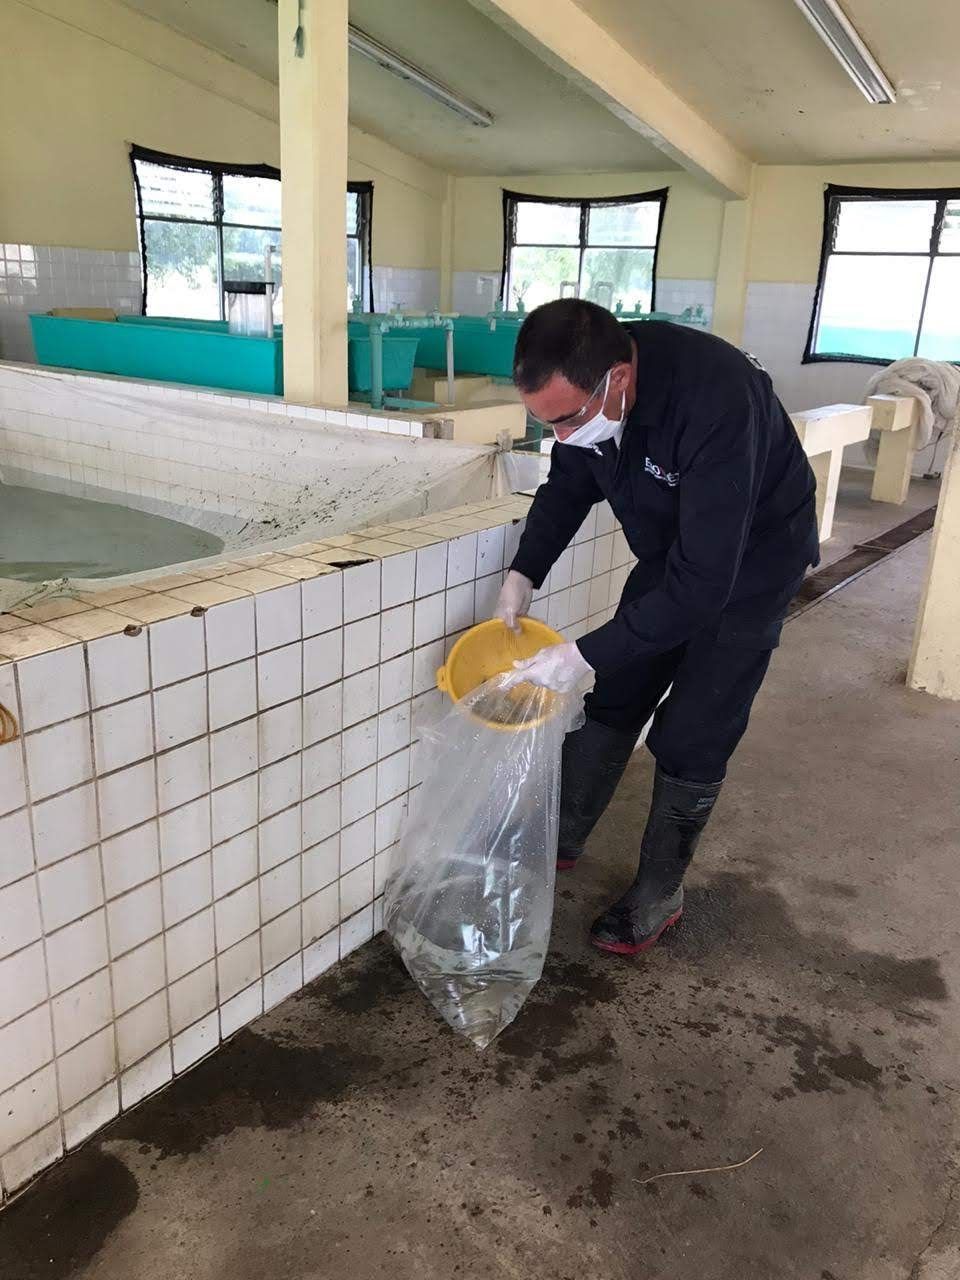 "Gobierno del edoméx entrega crías acuícolas durante contingencia por Covid-19"